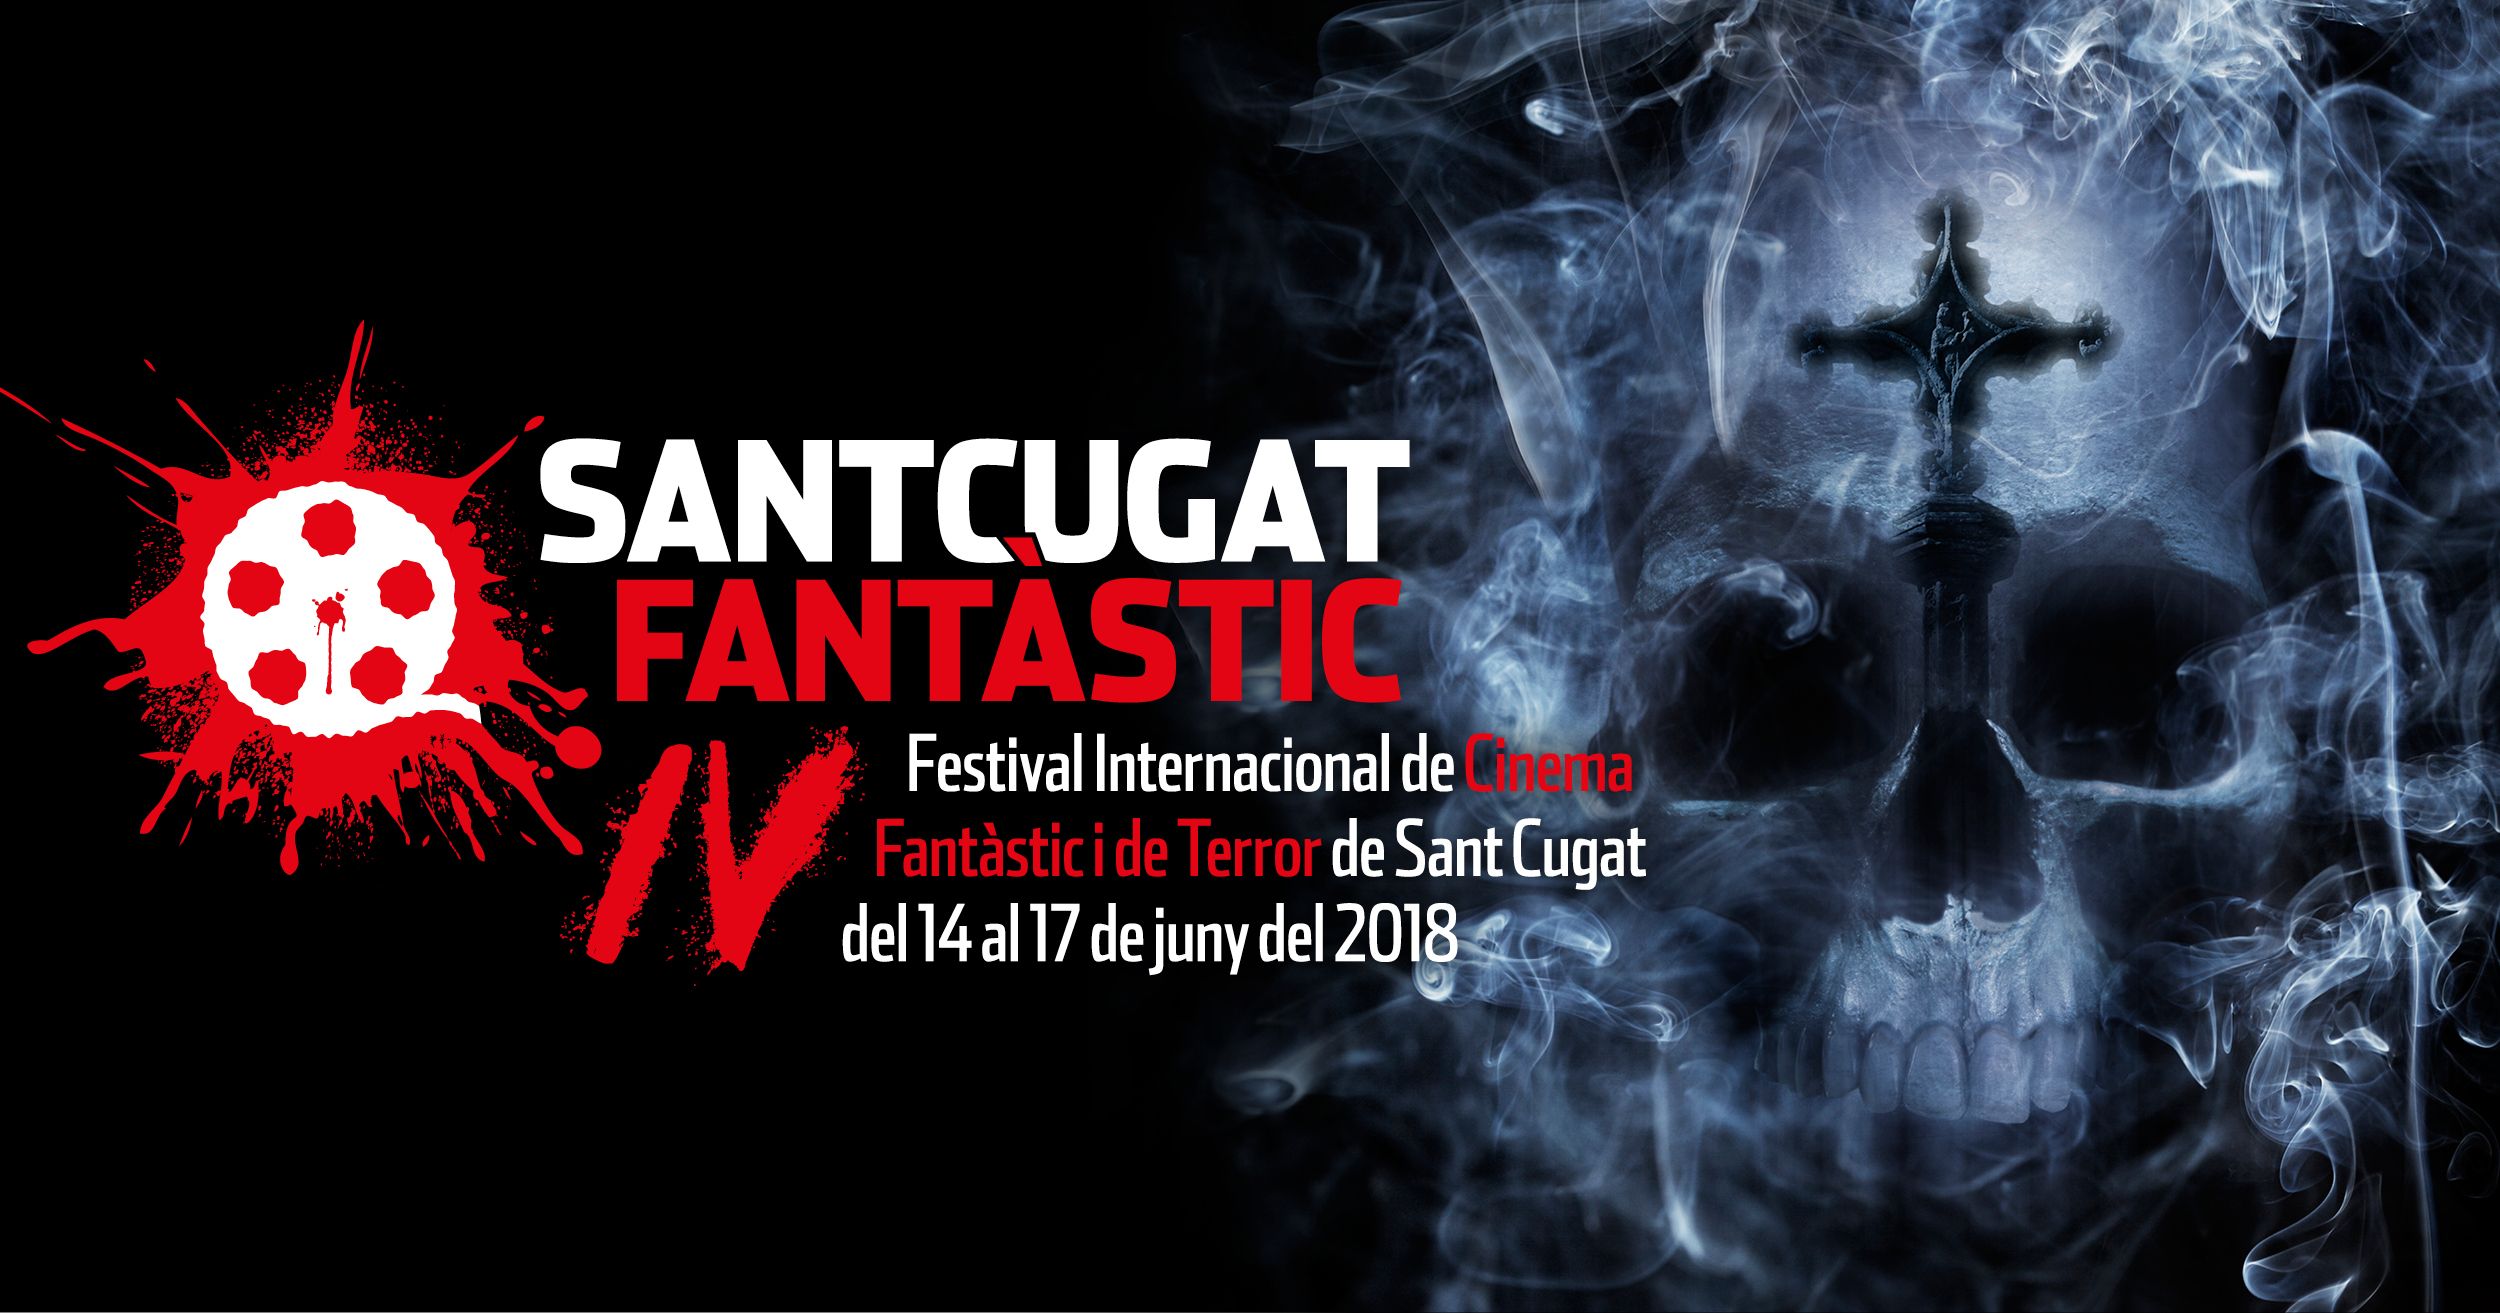 Cartell del IV Festival Internacional de Cinema Fantàstic i de Terror de Sant Cugat. FOTO: Sant Cugat Fantàstic.